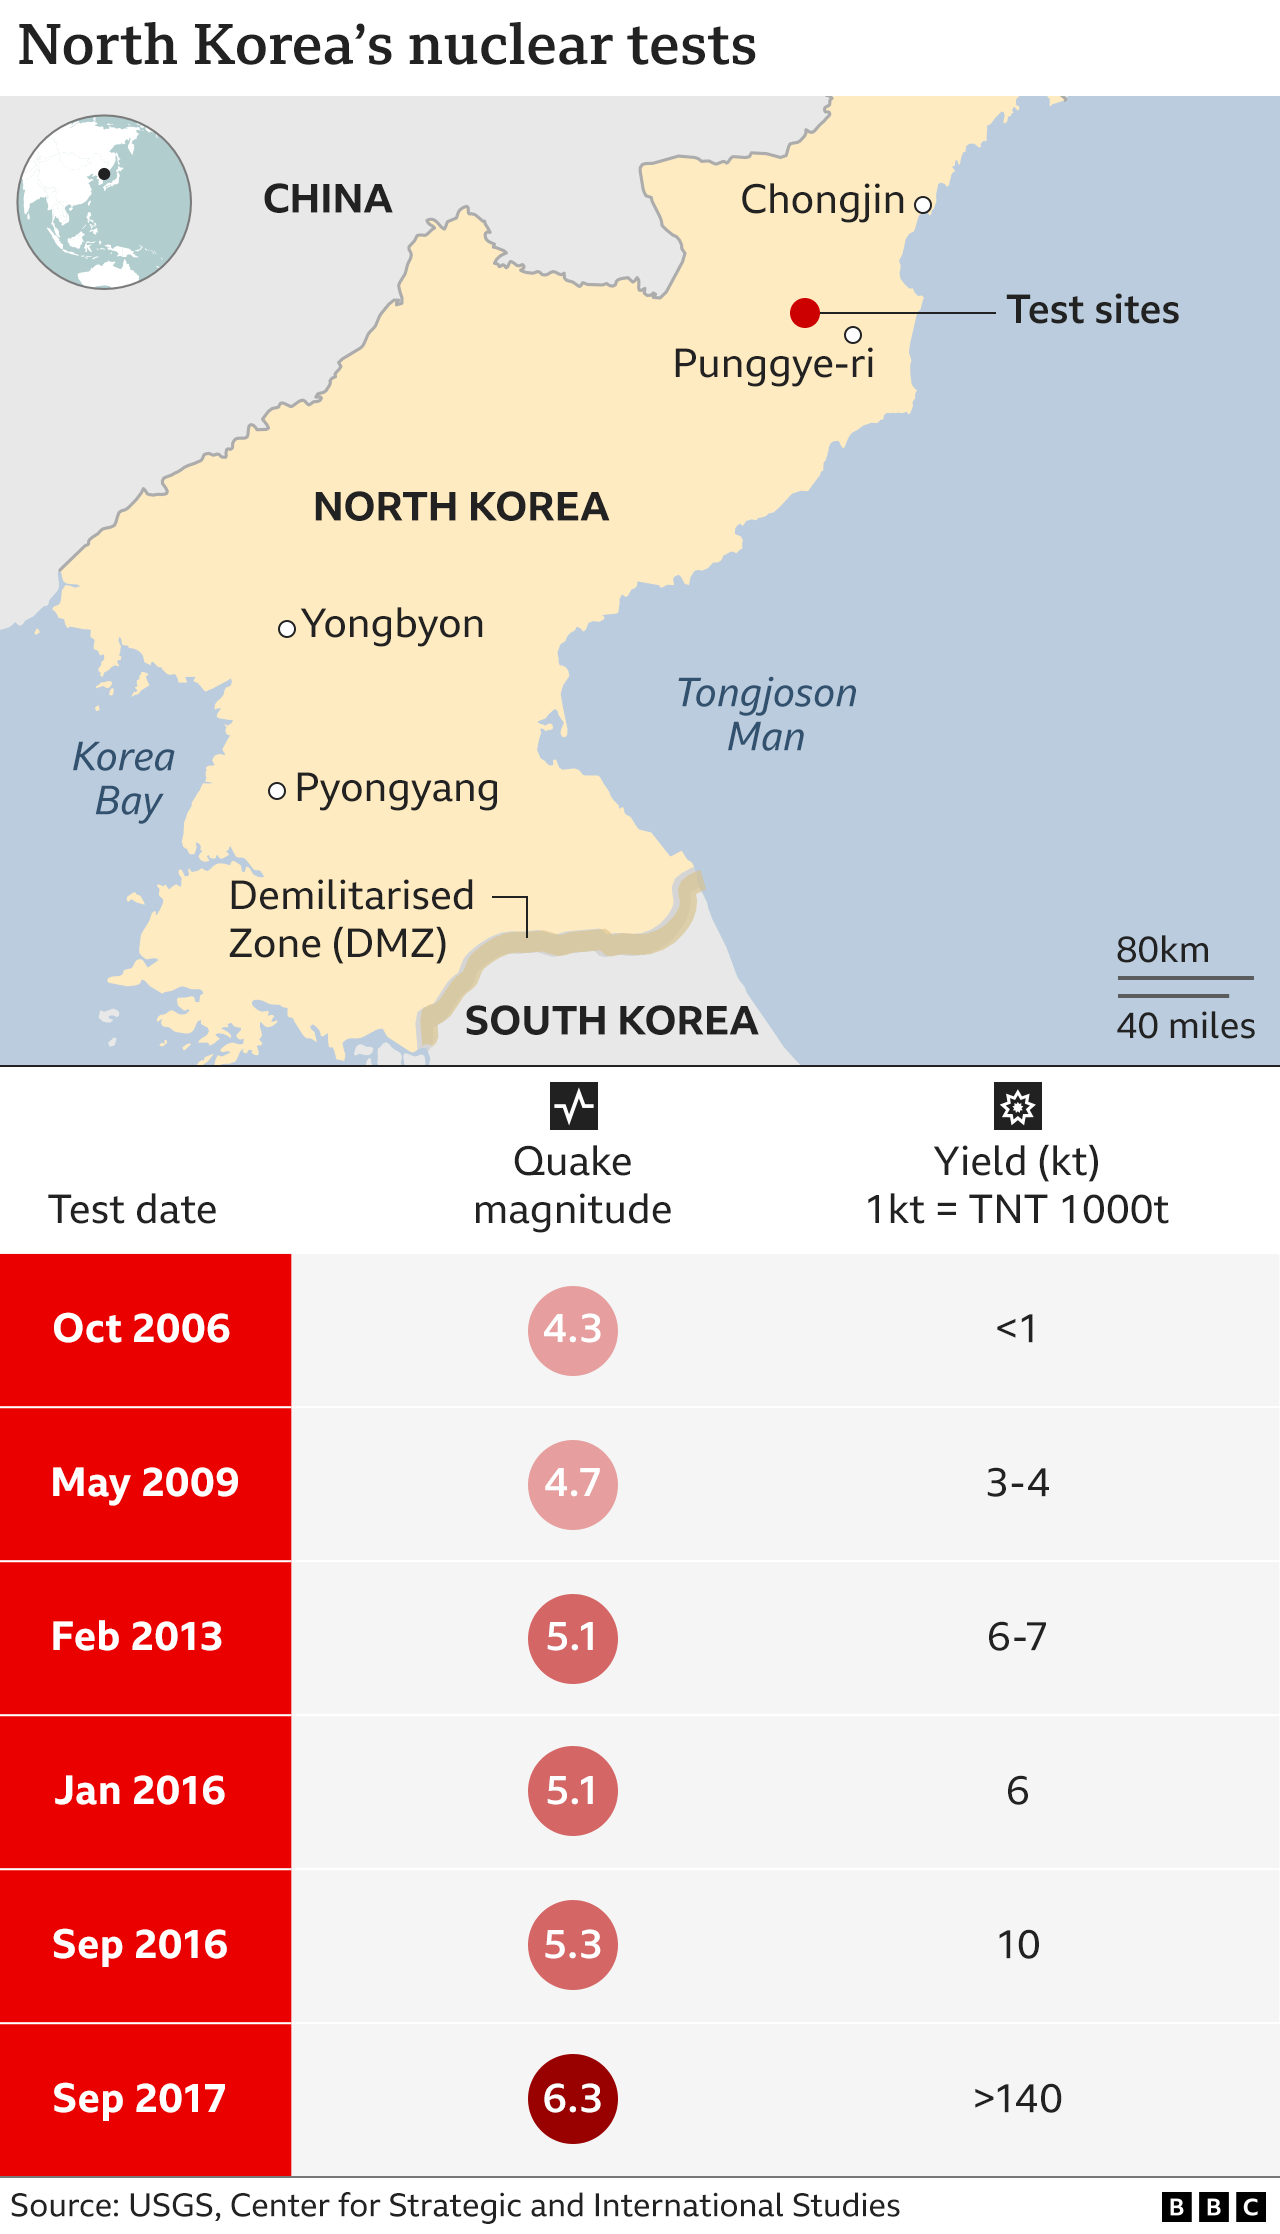 แผนที่แสดงสถานที่ทดสอบนิวเคลียร์หลักในเกาหลีเหนือและตารางการทดสอบตามช่วงเวลา